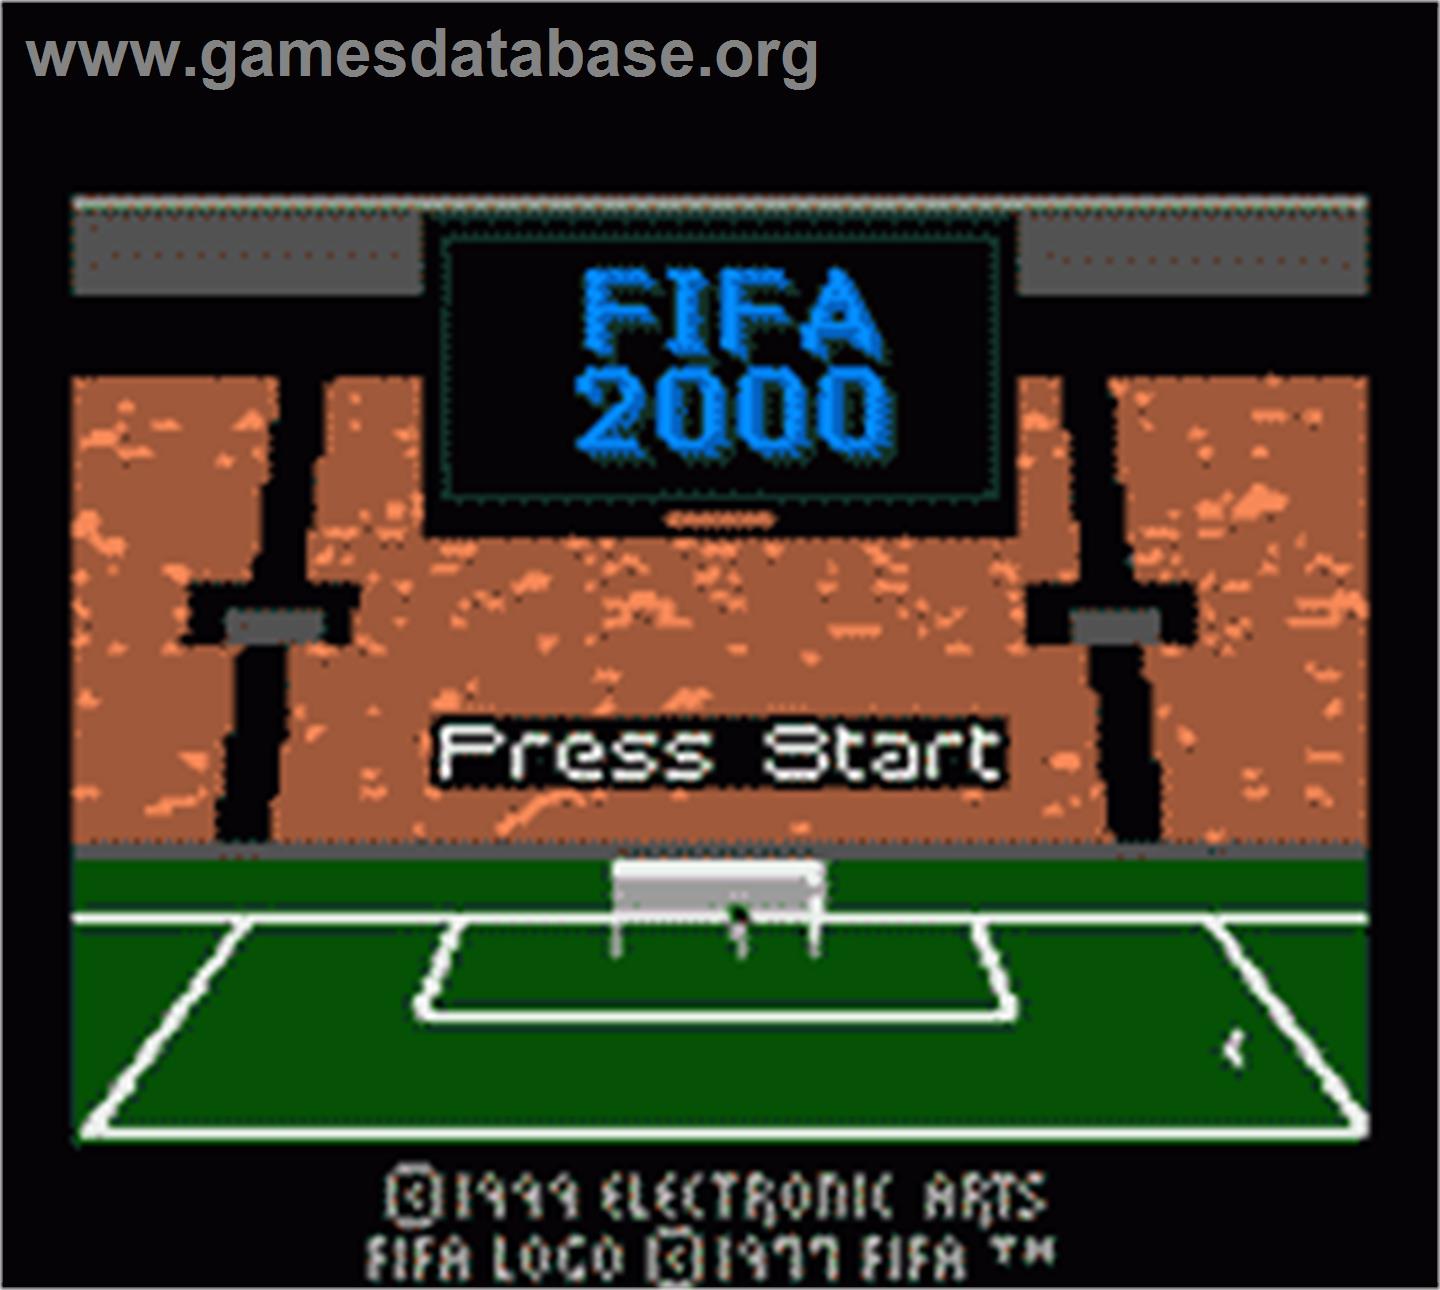 FIFA 2000: Major League Soccer - Nintendo Game Boy Color - Artwork - Title Screen